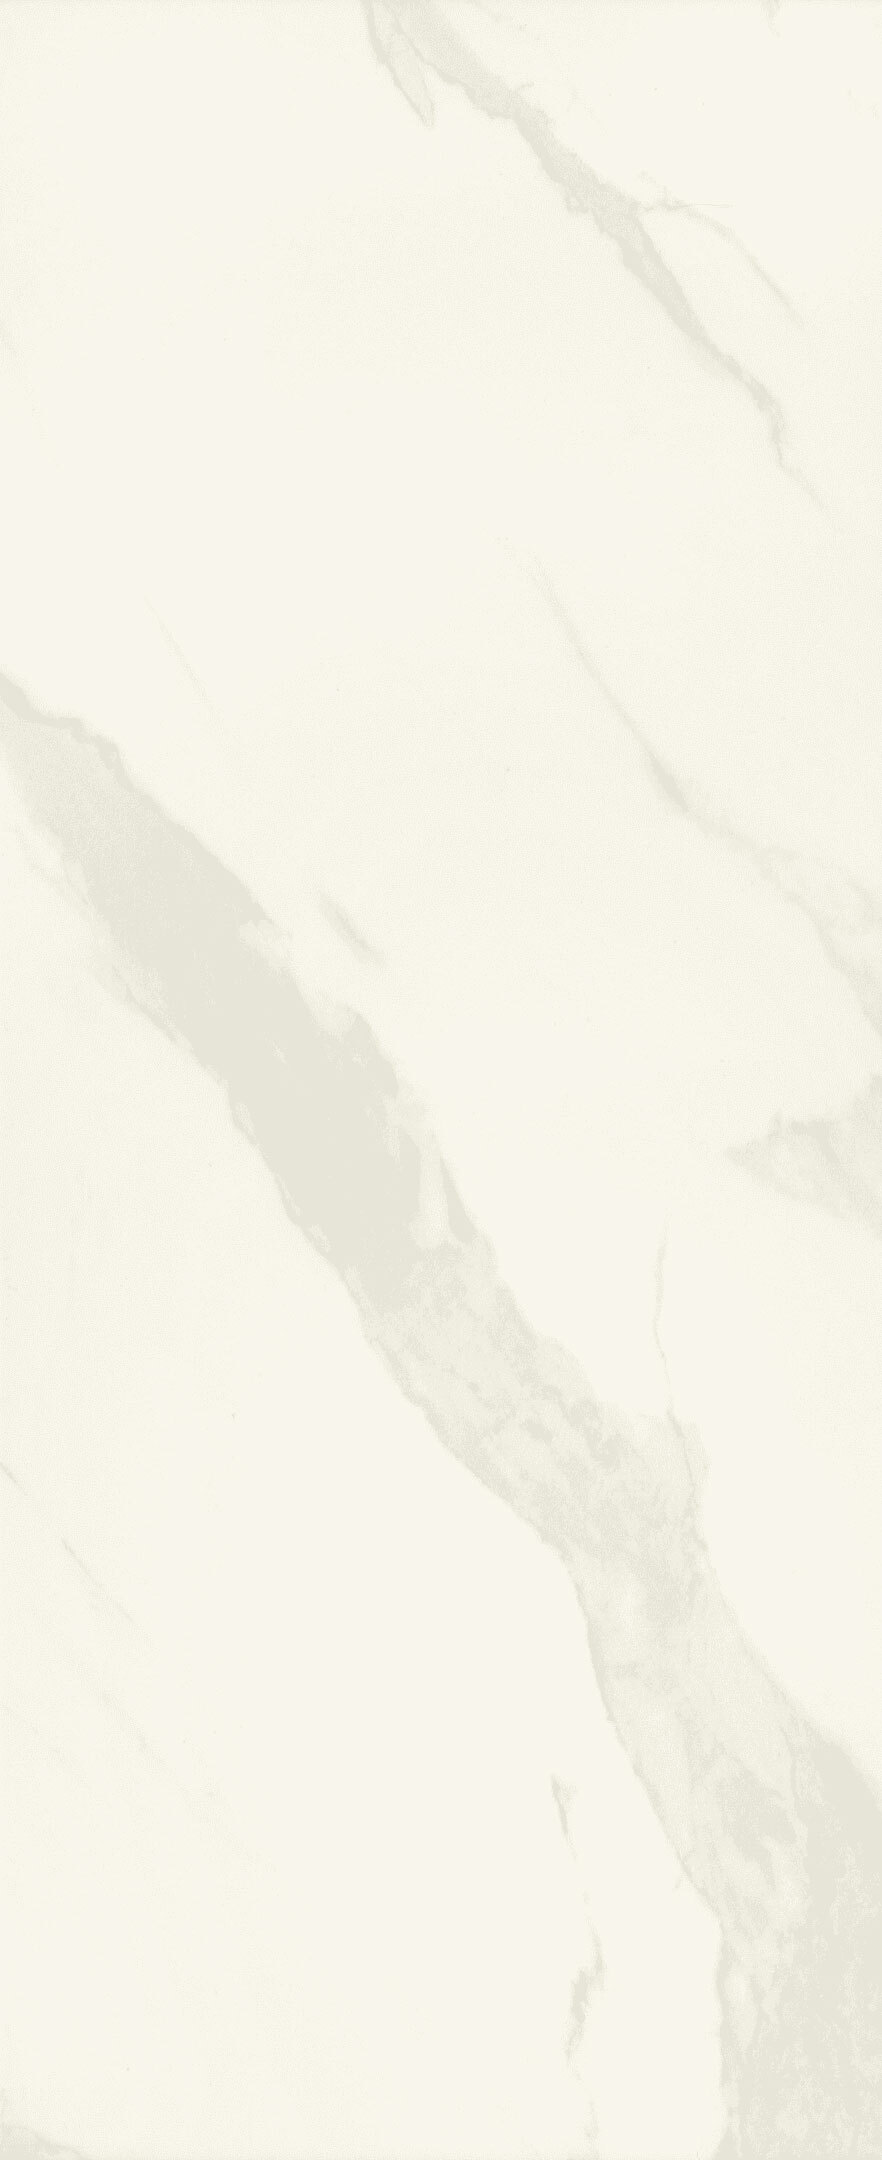 Плитка облицовочная Gracia Ceramica Sputnik белая 1 600х250х9 мм (8 шт.=1,2 кв.м) плитка облицовочная gracia ceramica blum белая 1 60х25 см 8 шт 1 2 кв м